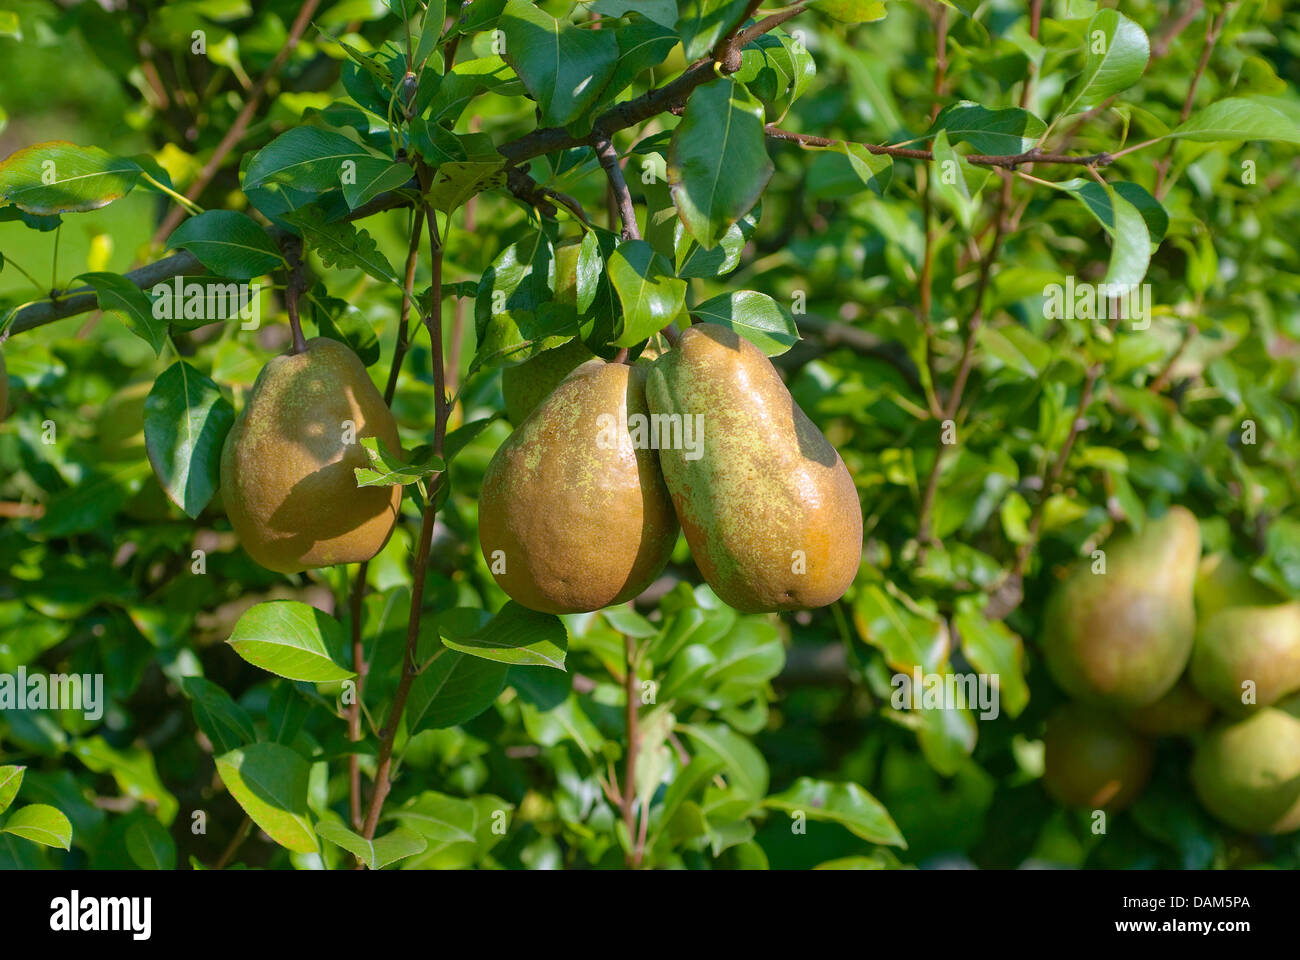 Common pear (Pyrus communis 'Jeanne d'Arc', Pyrus communis Jeanne d'Arc), cultivar Jeanne d'Arc Stock Photo